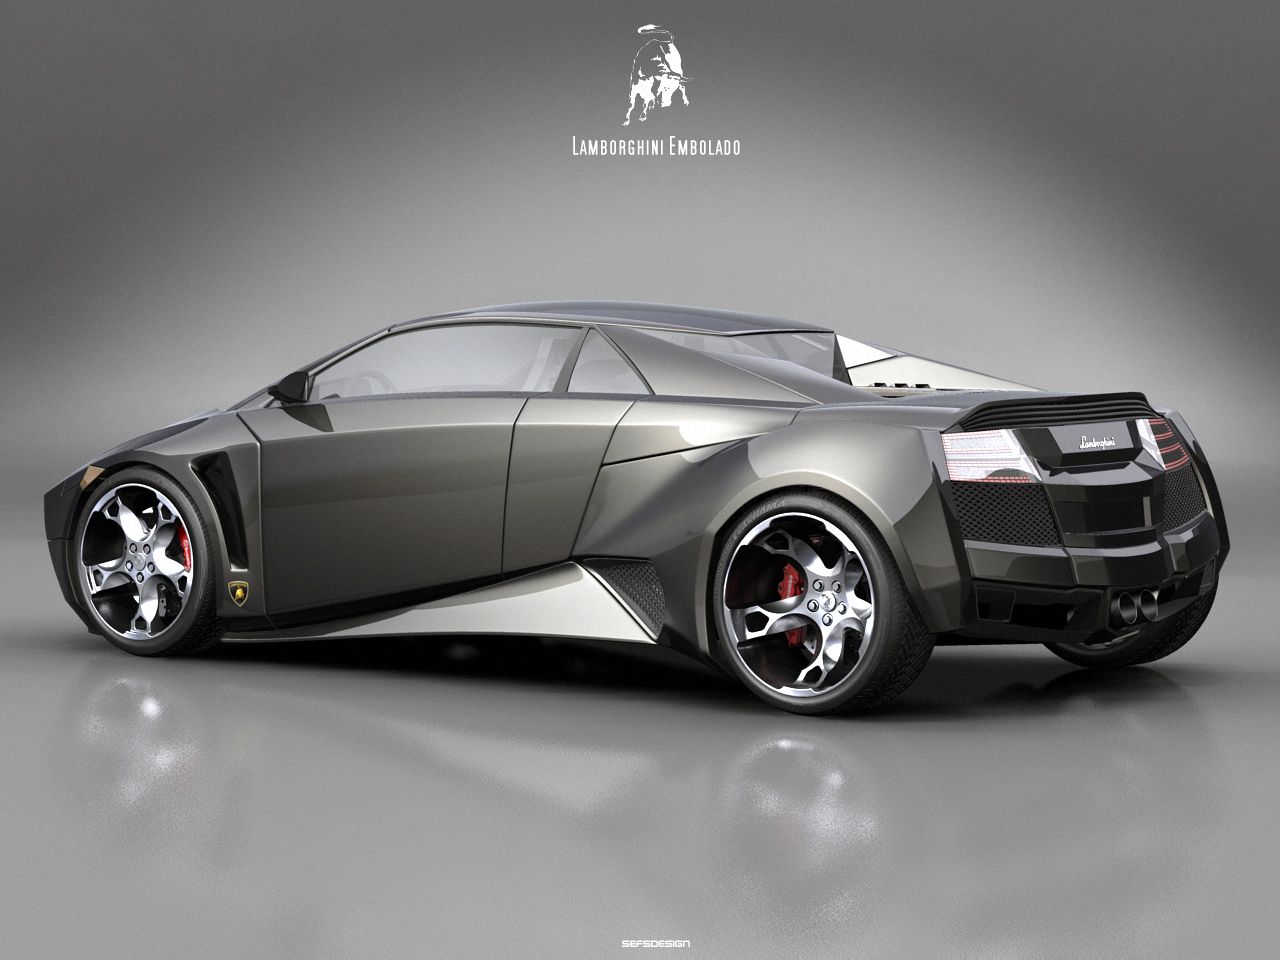 2007 Lamborghini Embolado Concept